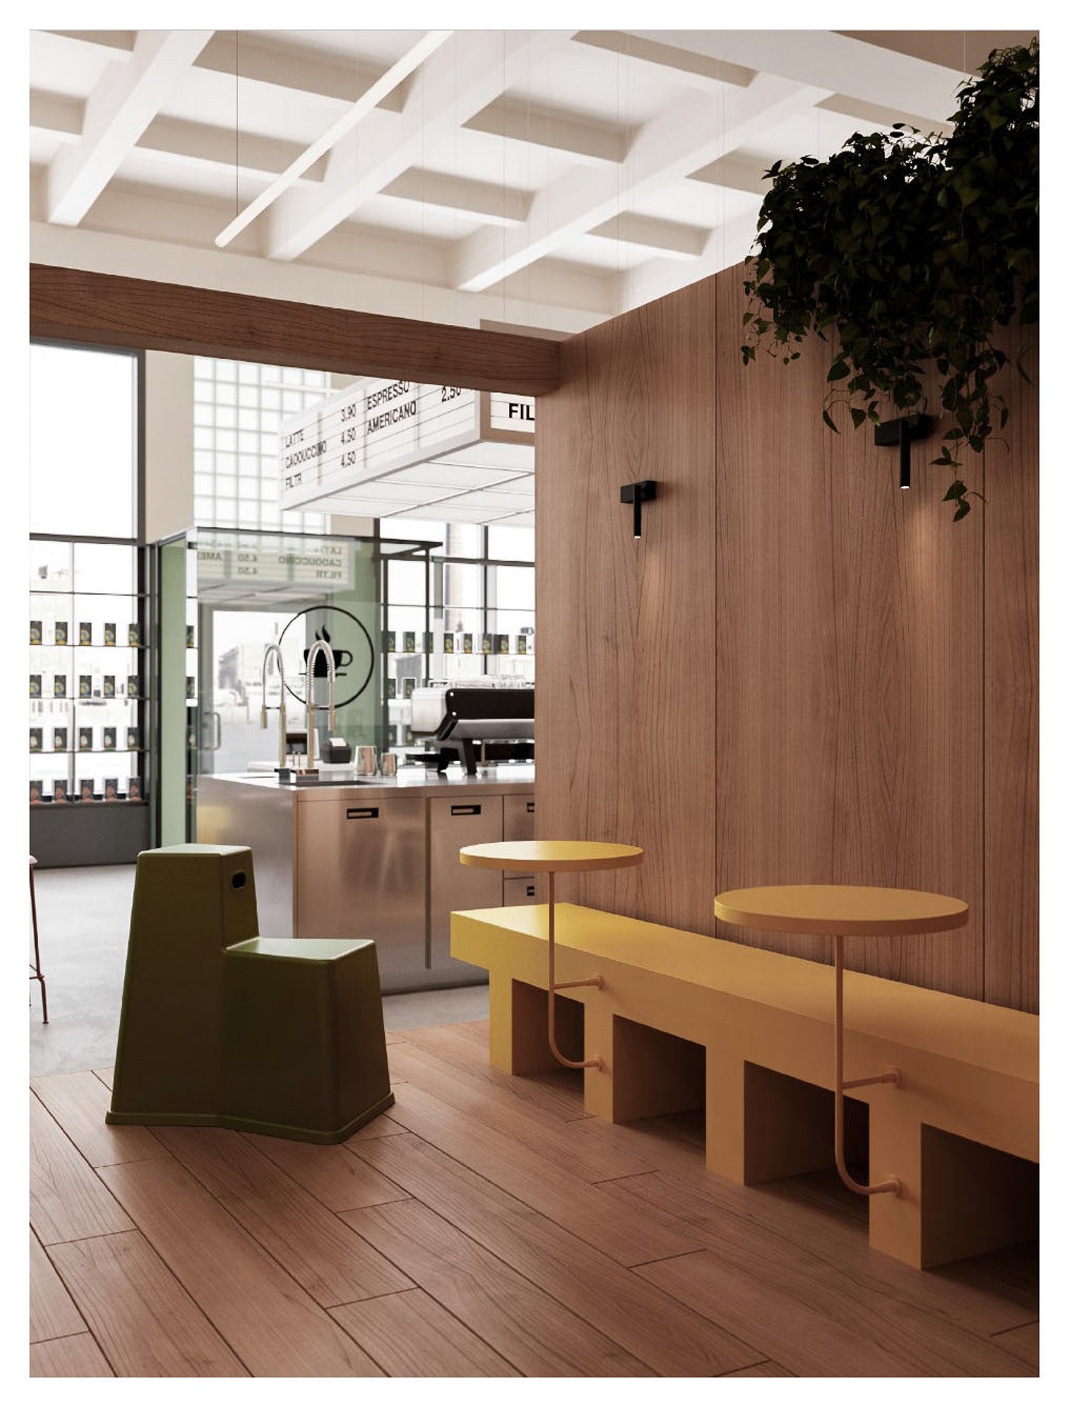 浓咖啡吧 俄罗斯 咖啡店 灯箱 logo设计 vi设计 空间设计